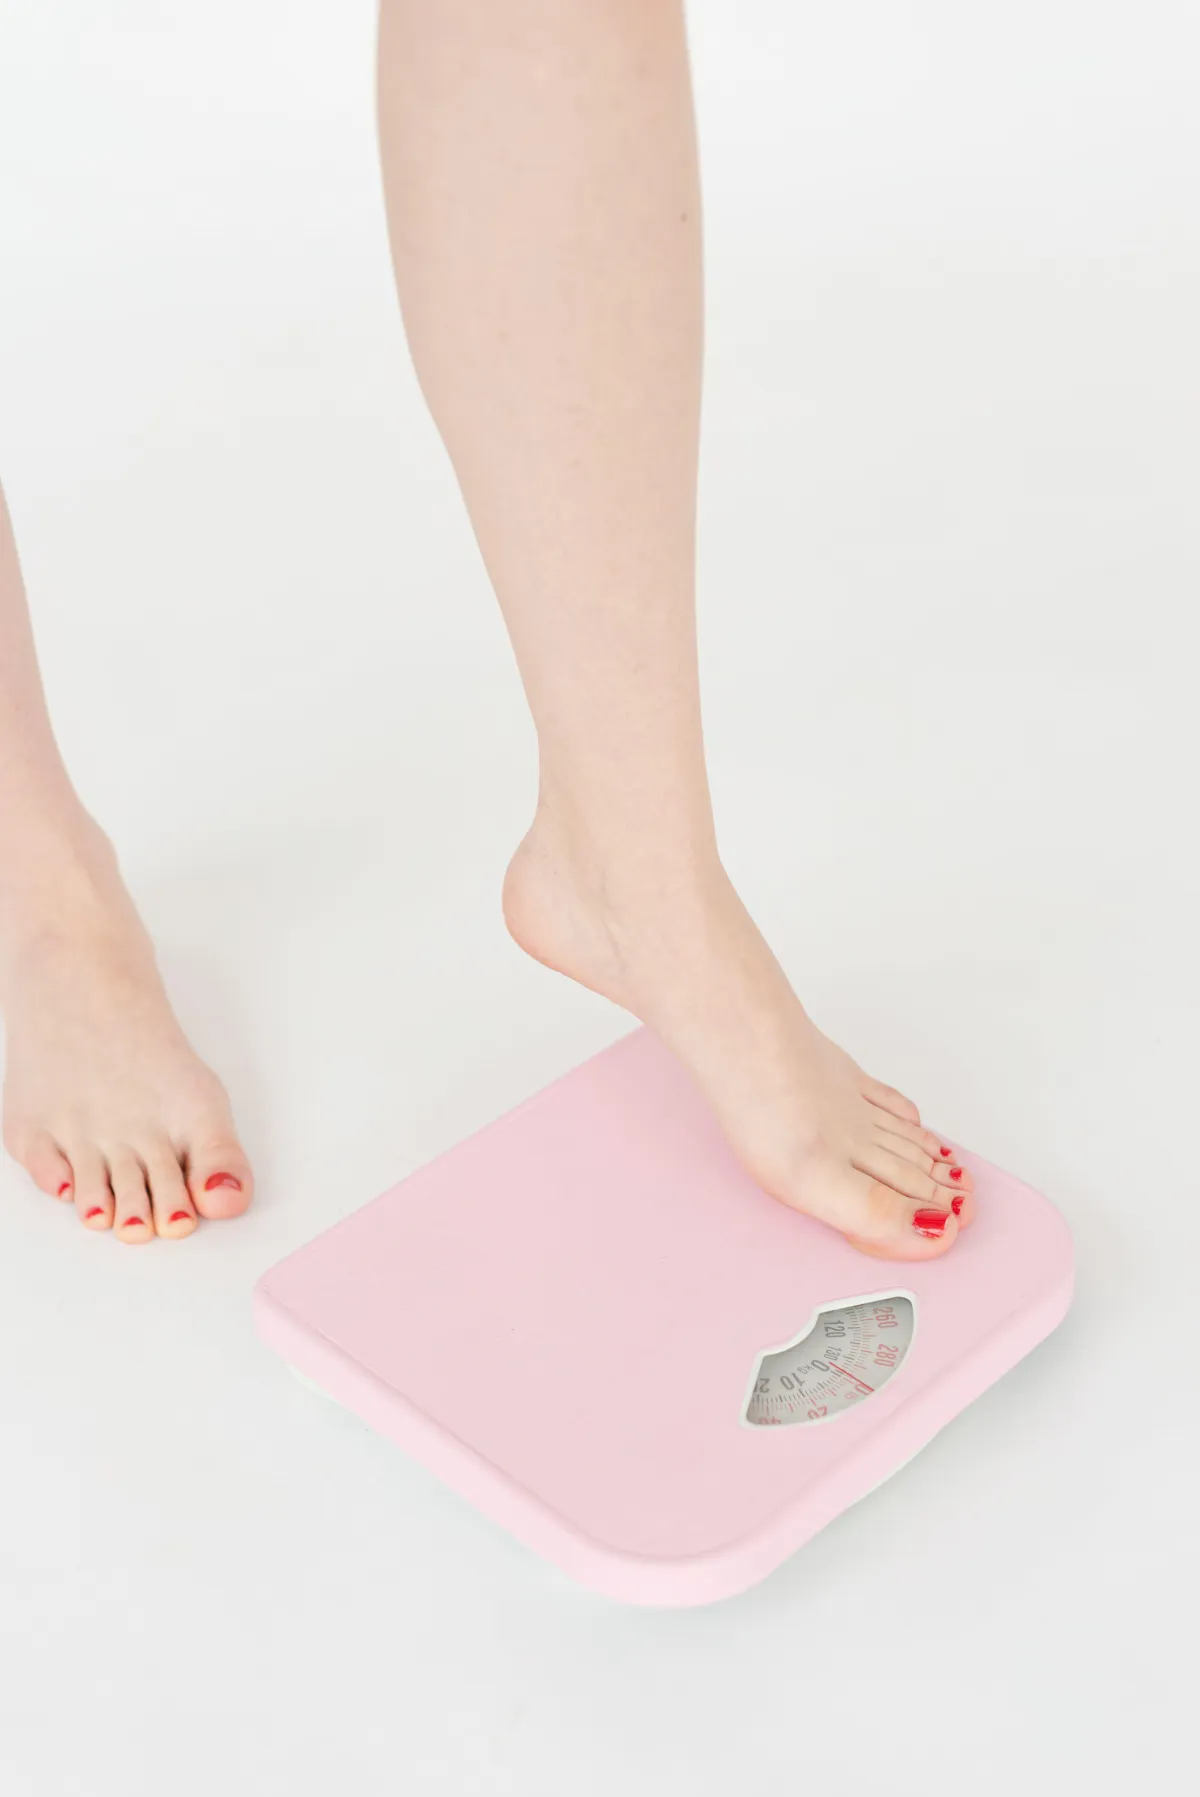 comment perdre du poids apres les fetes vite et facilement